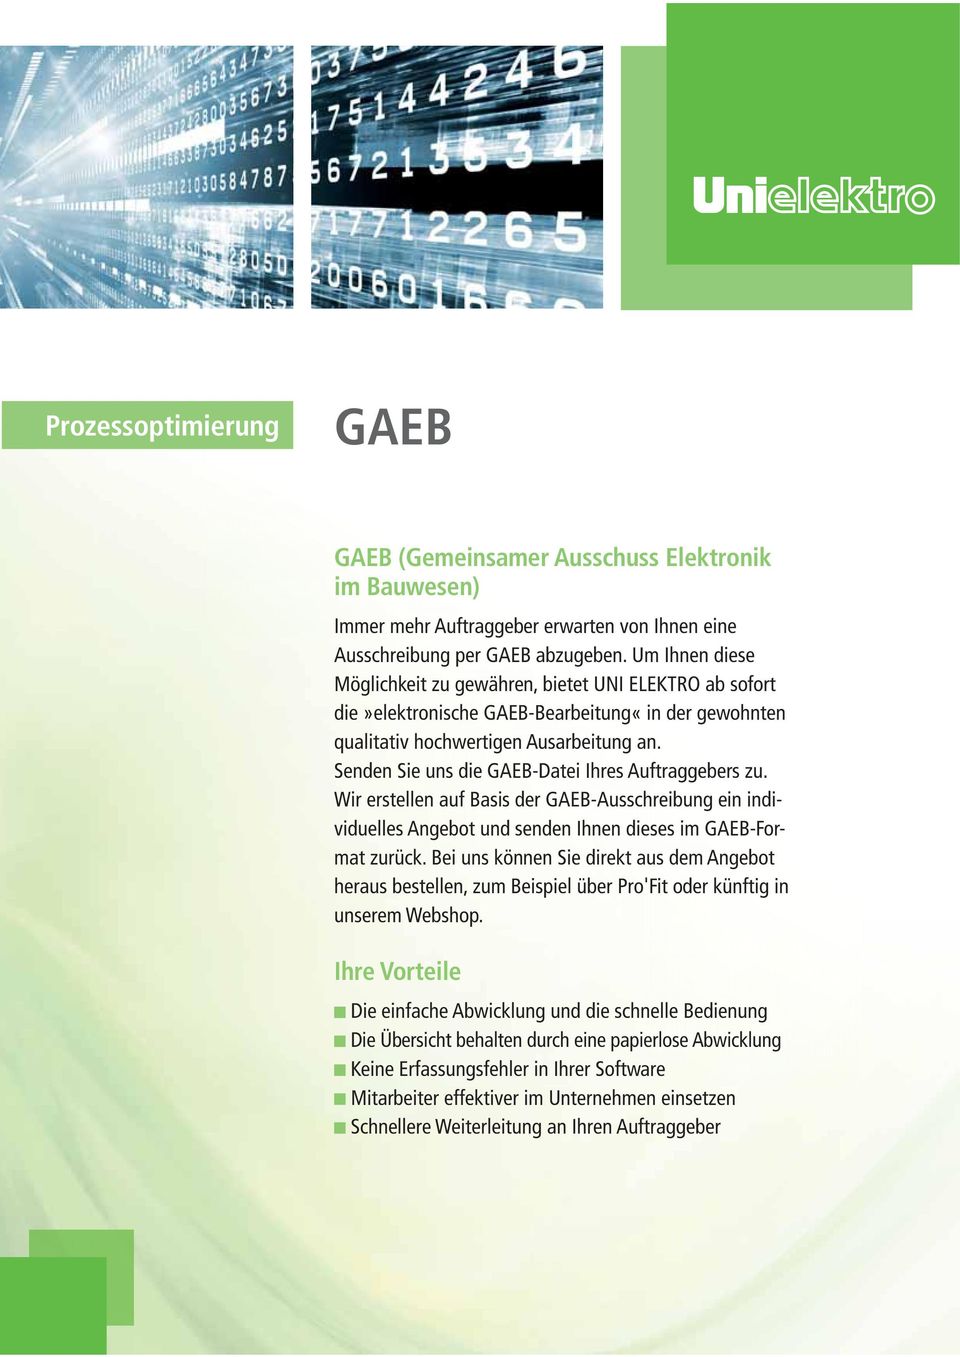 Senden Sie uns die GAEB-Datei Ihres Auftraggebers zu. Wir erstellen auf Basis der GAEB-Ausschreibung ein individuelles Angebot und senden Ihnen dieses im GAEB-Format zurück.